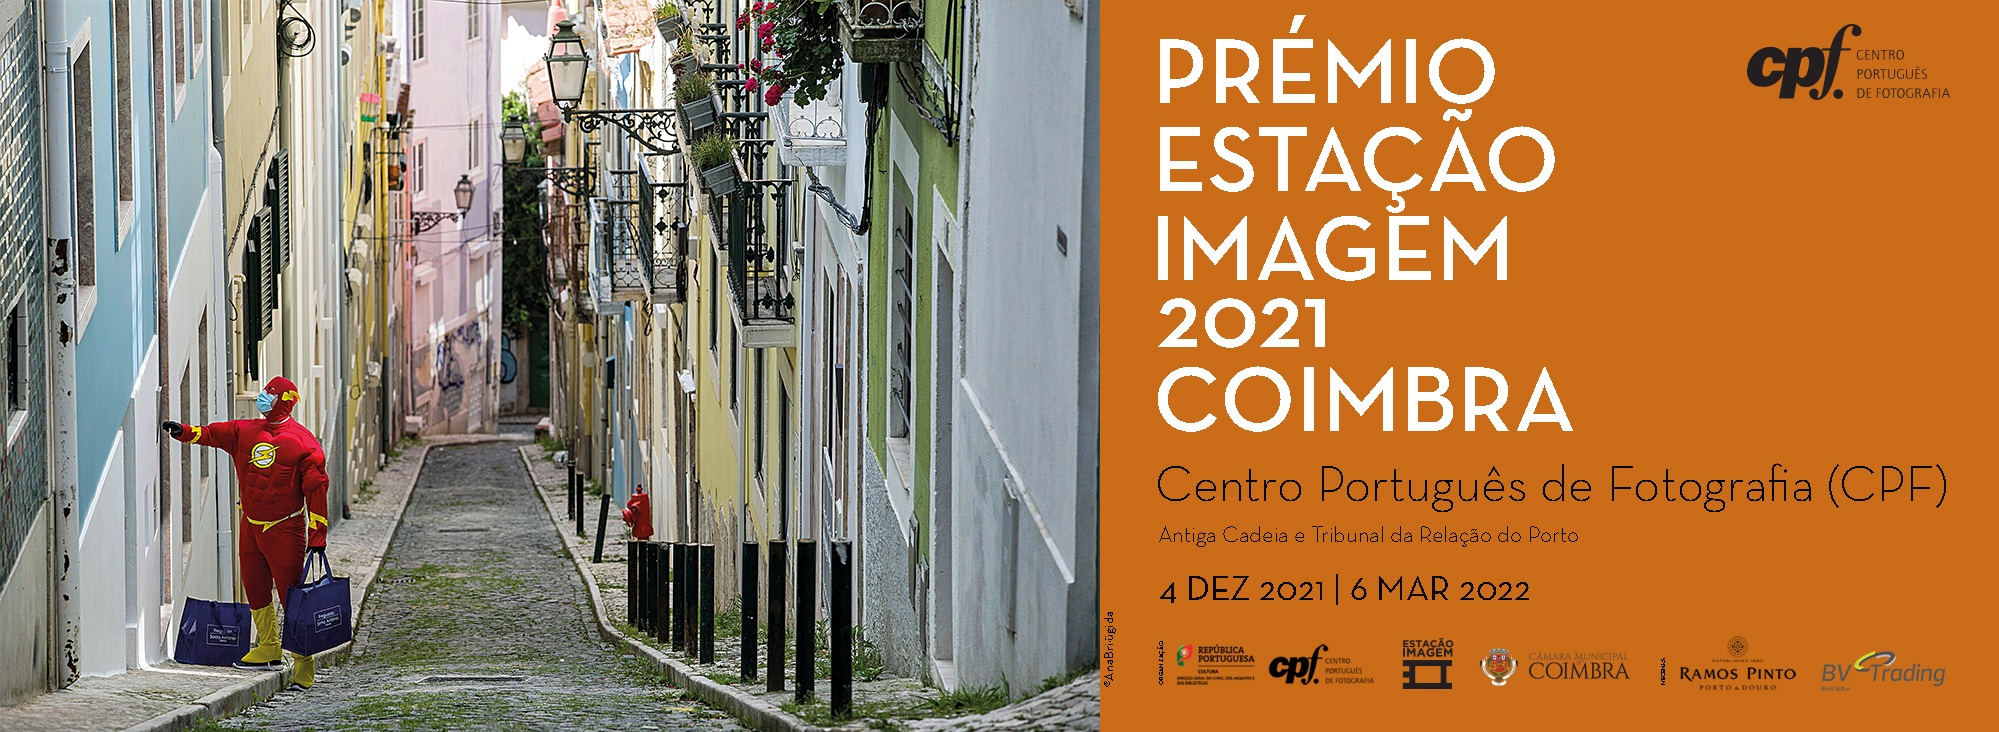 Exposição Prémio Estação Imagem 2021 Coimbra/Estação Imagem Award Coimbra 2021